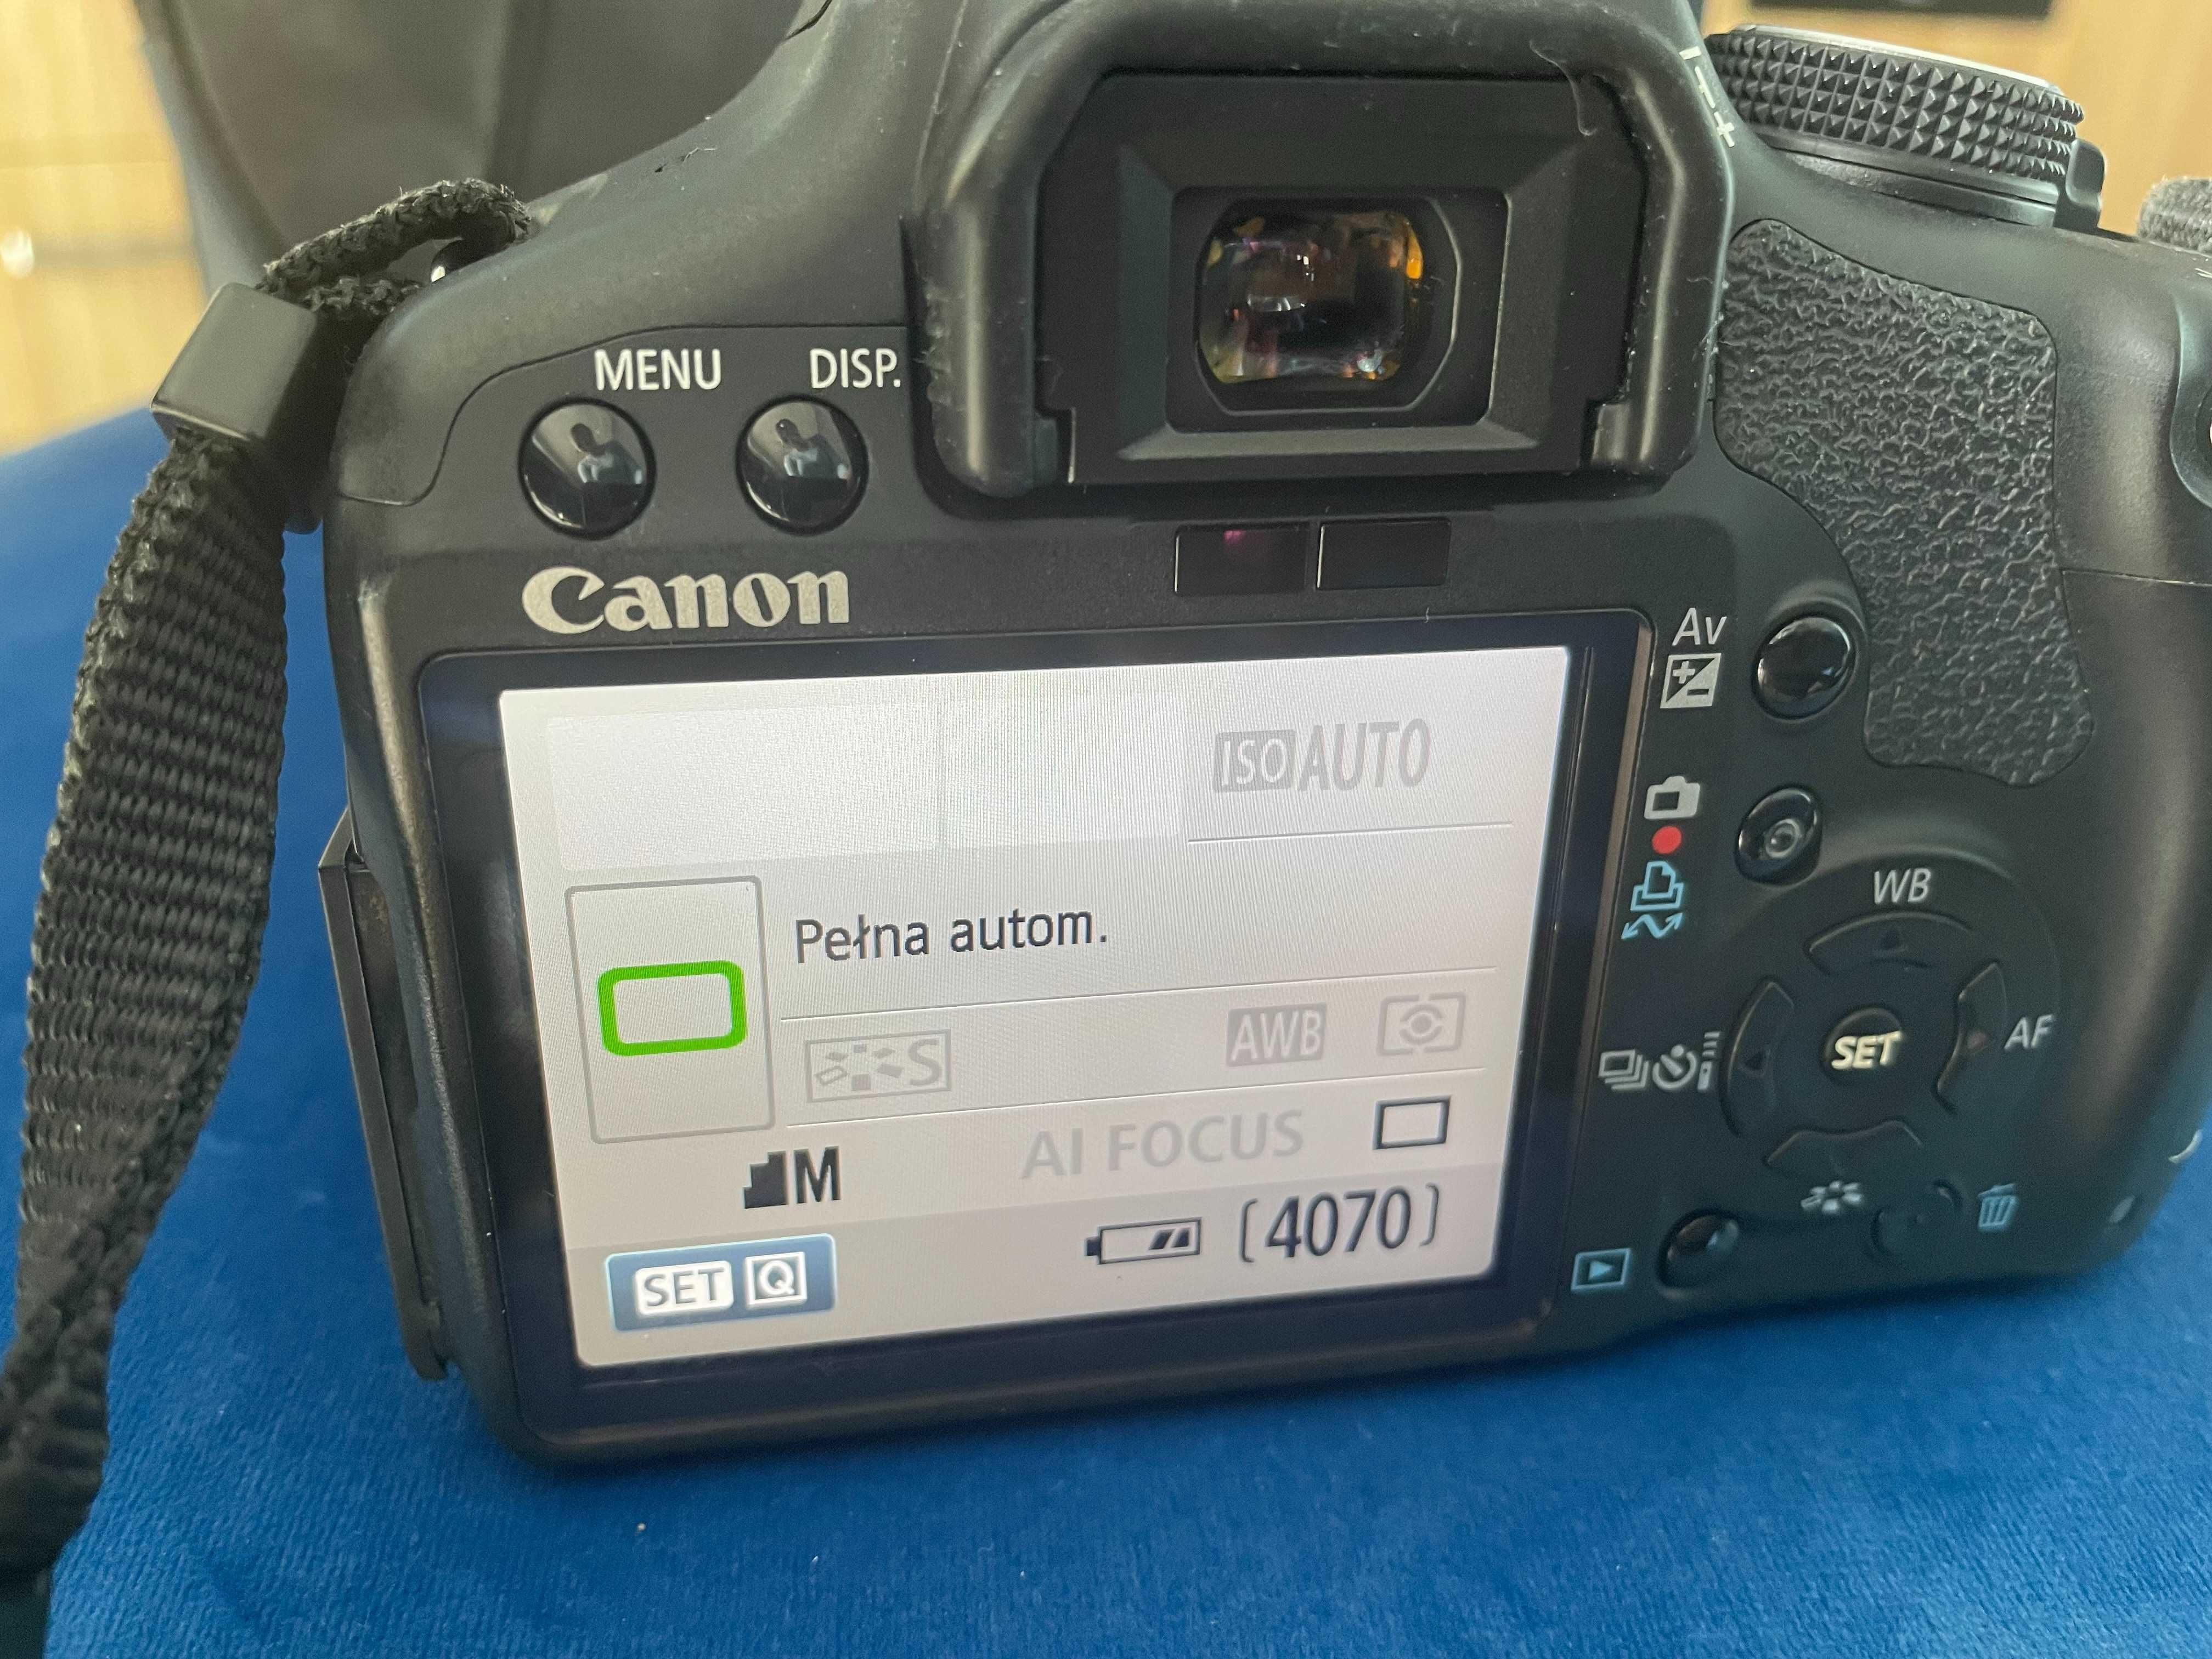 Sprzedam lustrzankę Canon EOS 500D + obiektyw Tamron 55-200 mm